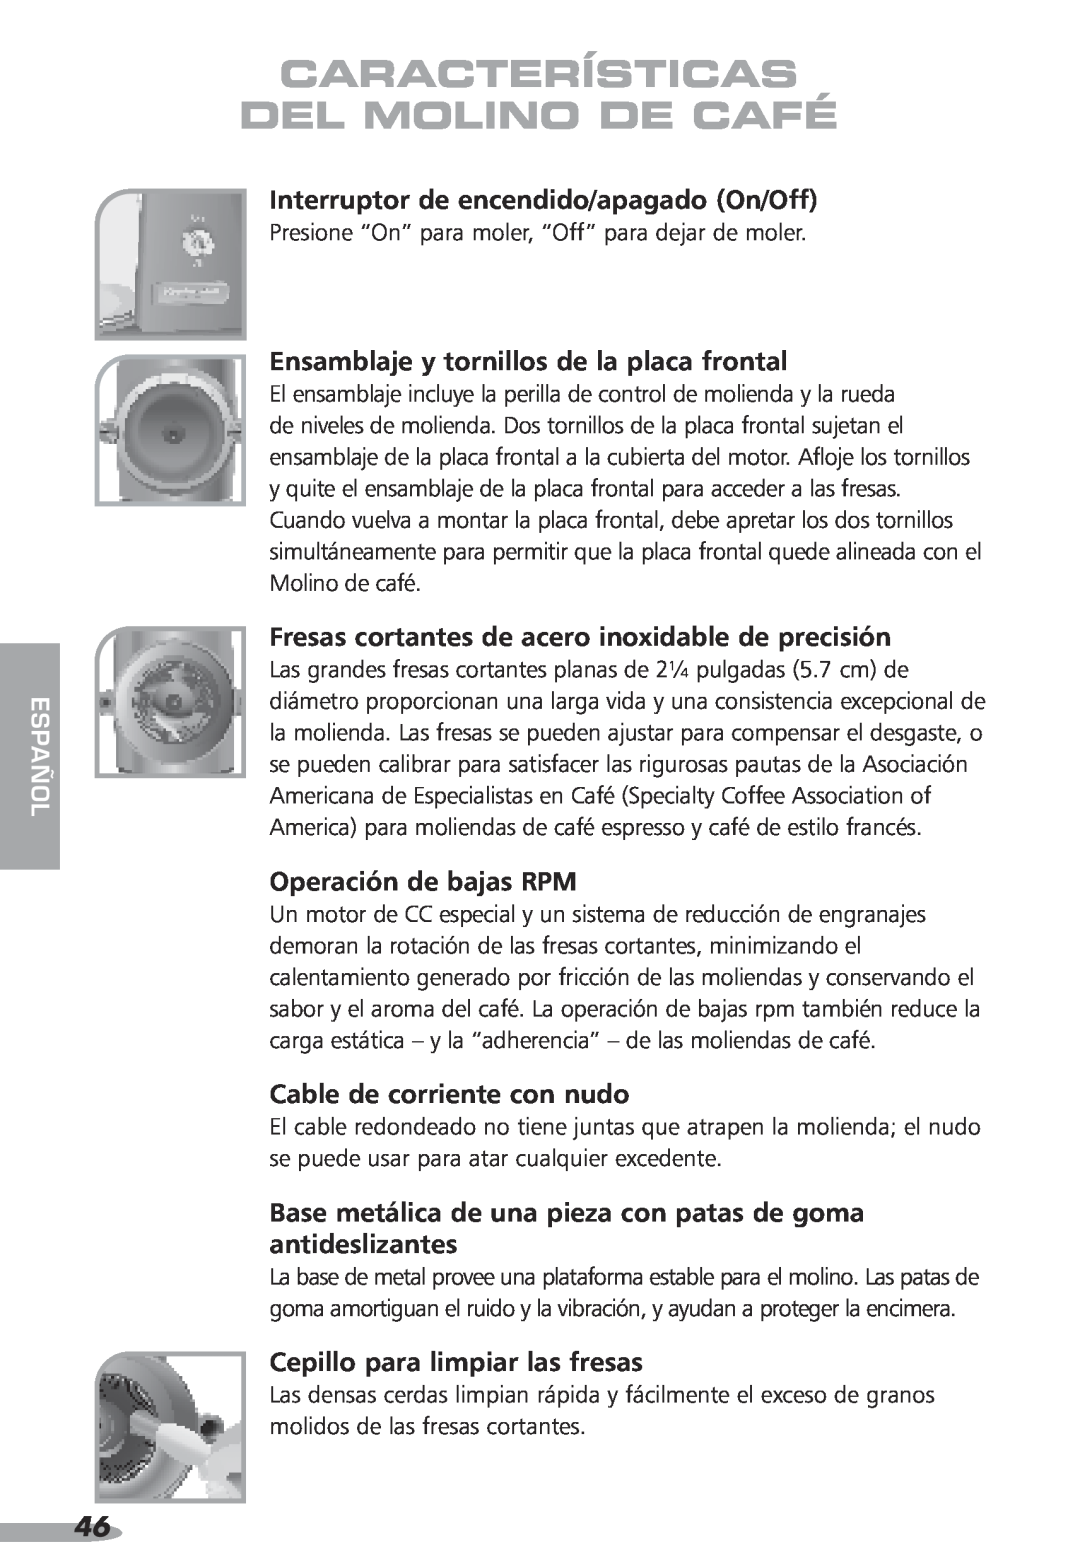 KitchenAid KPCG100, 87 Interruptor de encendido/apagado On/Off, Ensamblaje y tornillos de la placa frontal, español 